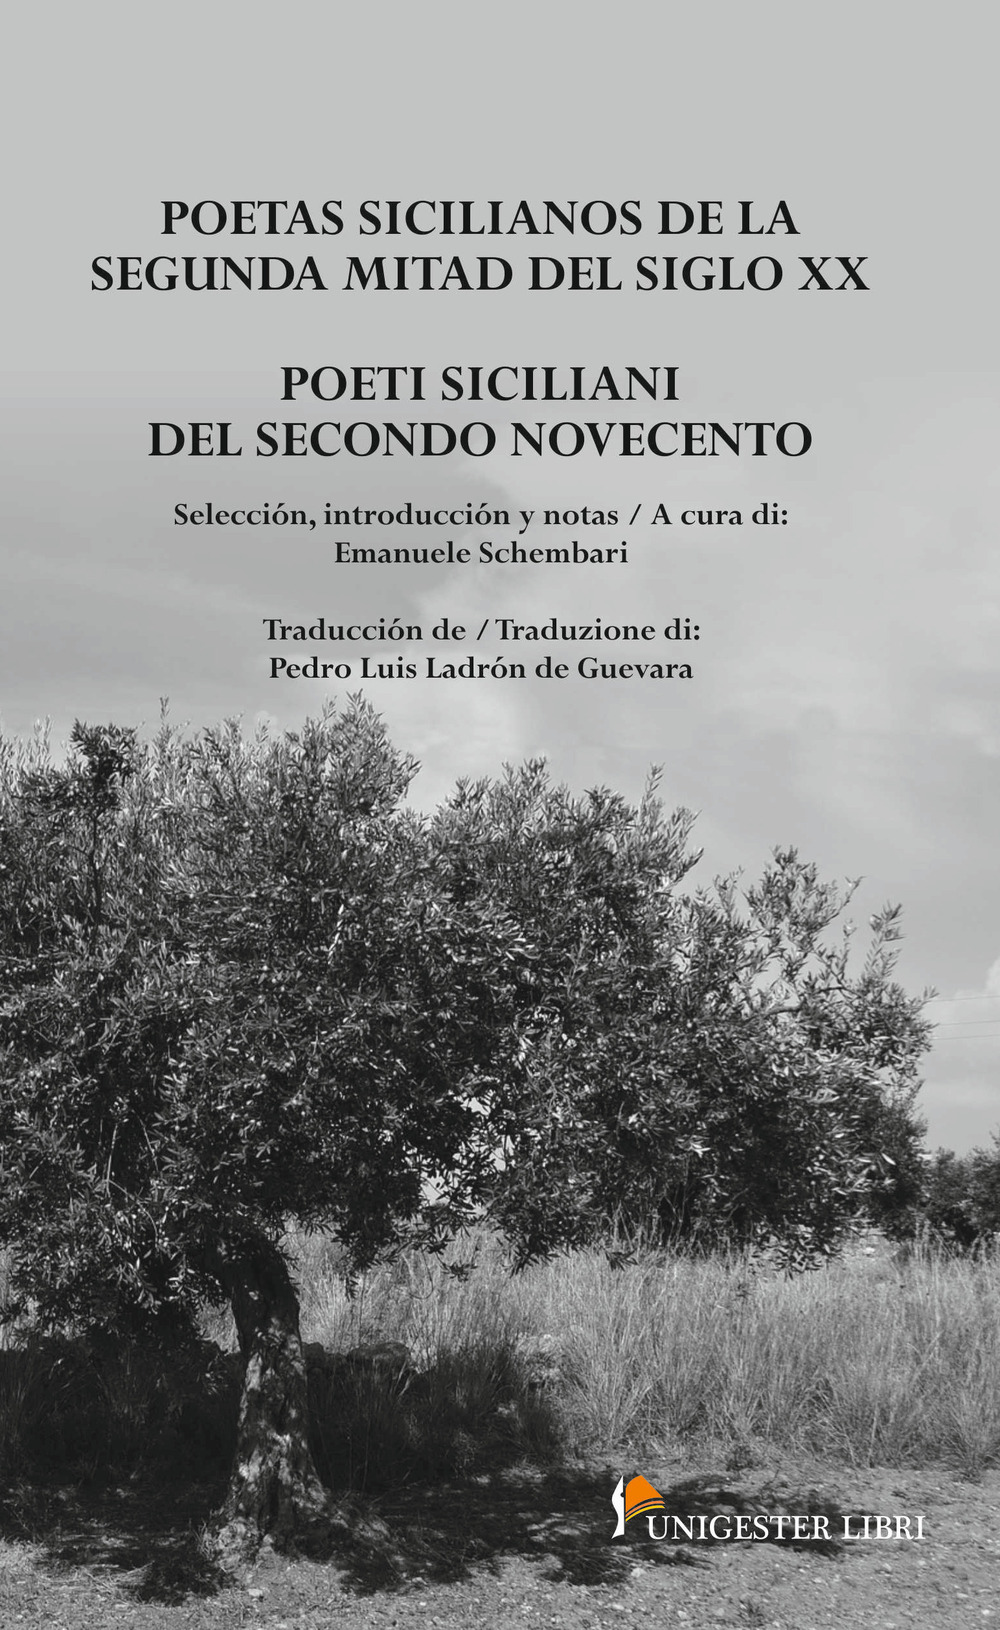 Poeti siciliani del secondo Novecento-Poetas sicilianos de la segunda mitad del siglo XX